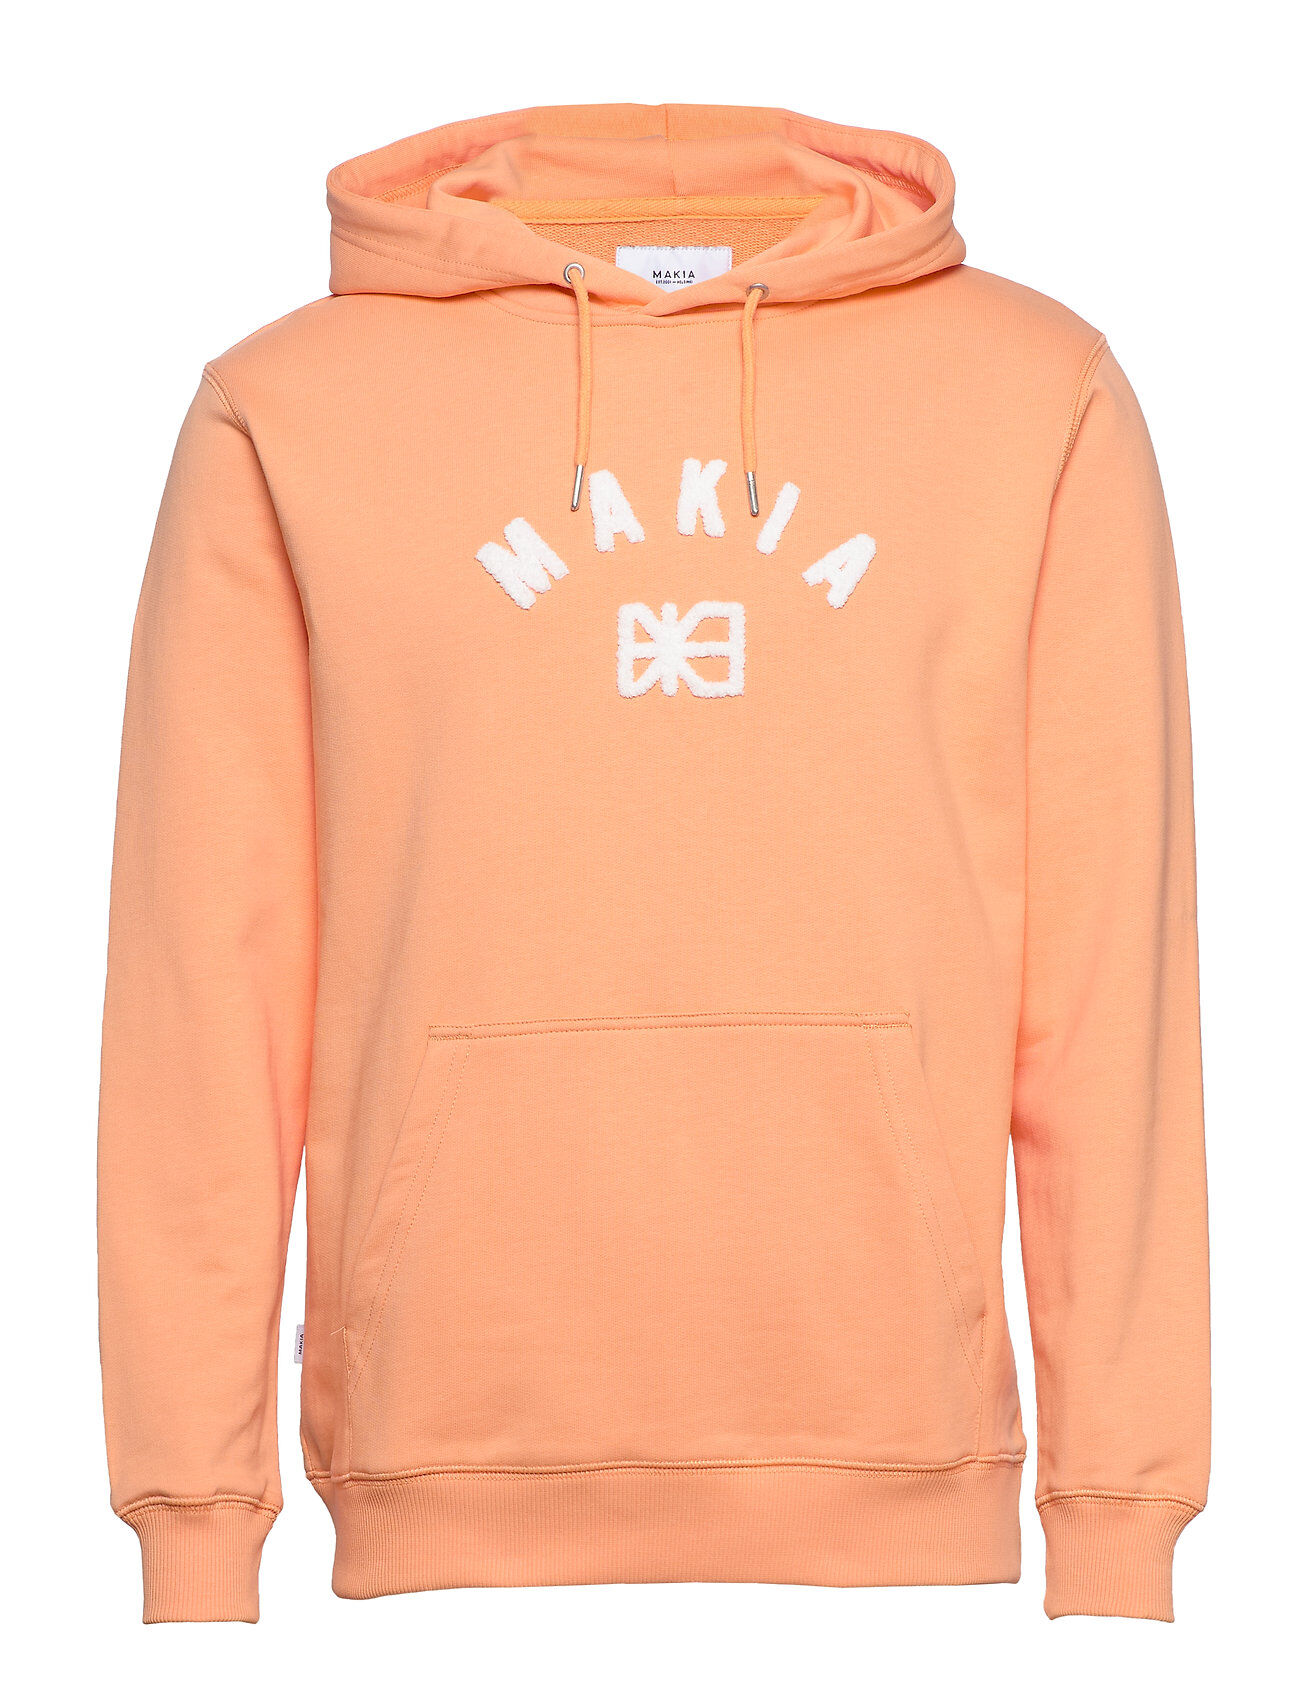 Makia Brand Hooded Sweatshirt Hettegenser Genser Oransje Makia